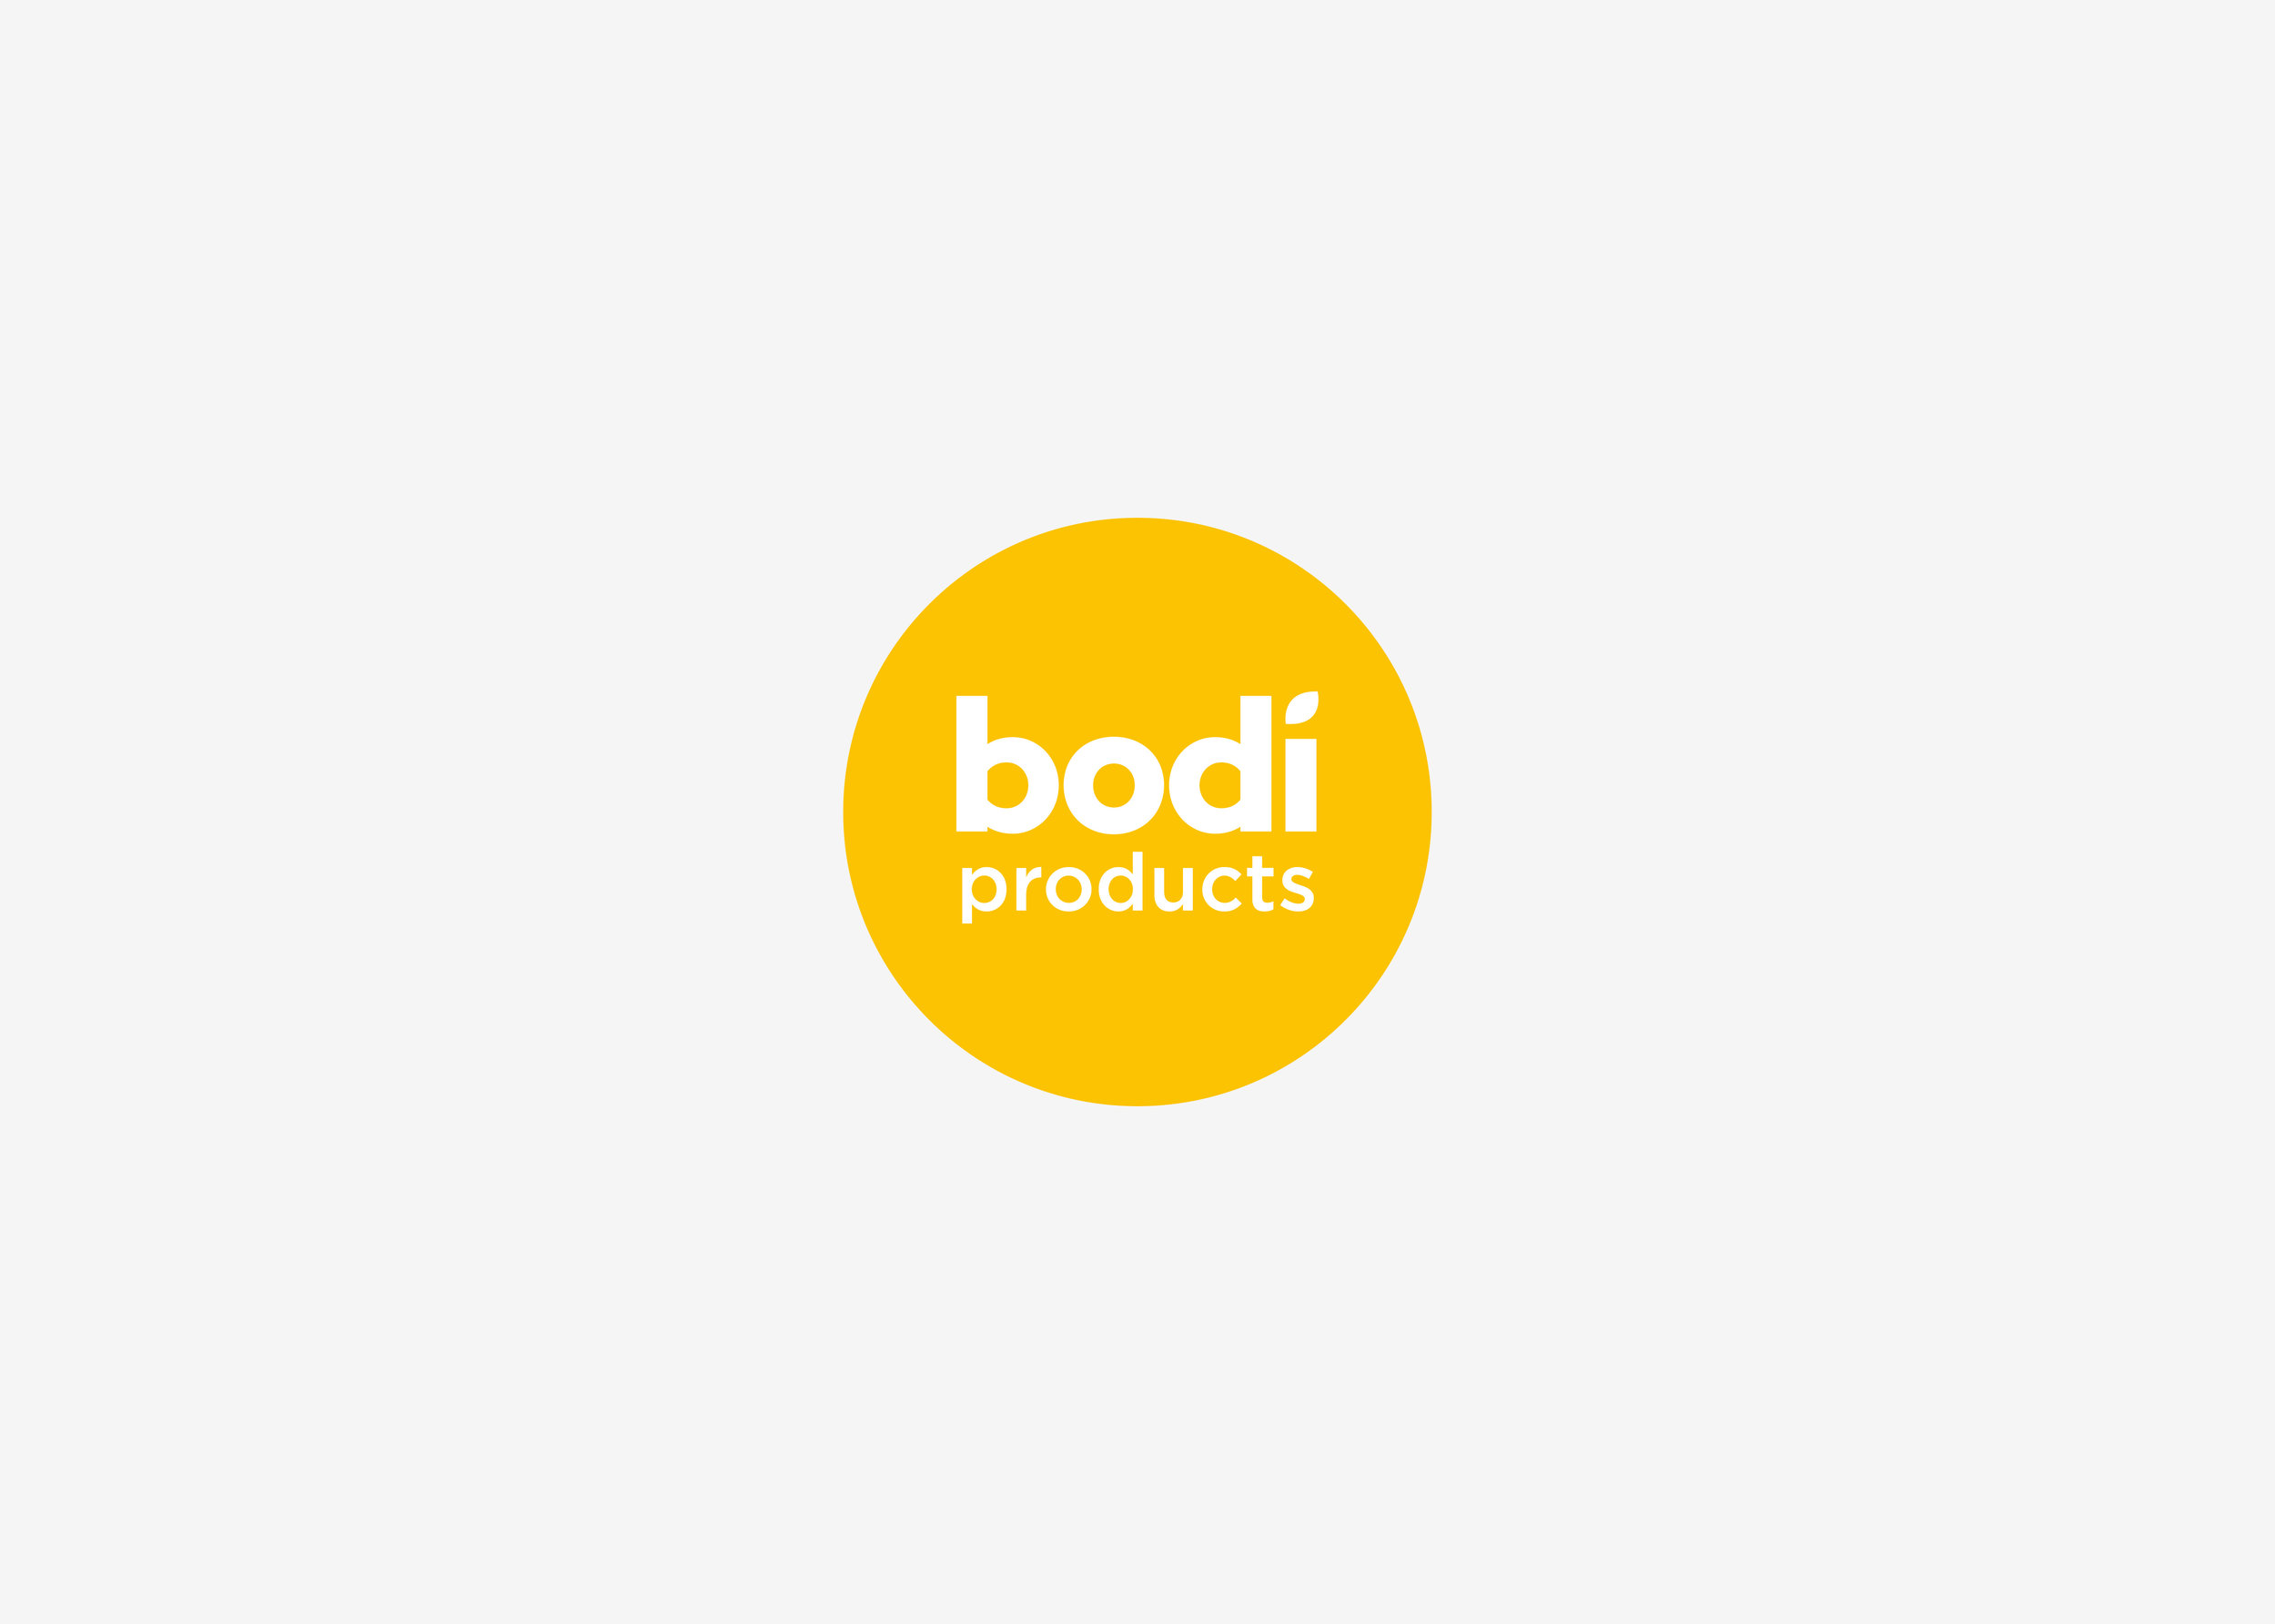 Packaging Designers UK Yellow circle Bodi logo in white grey background